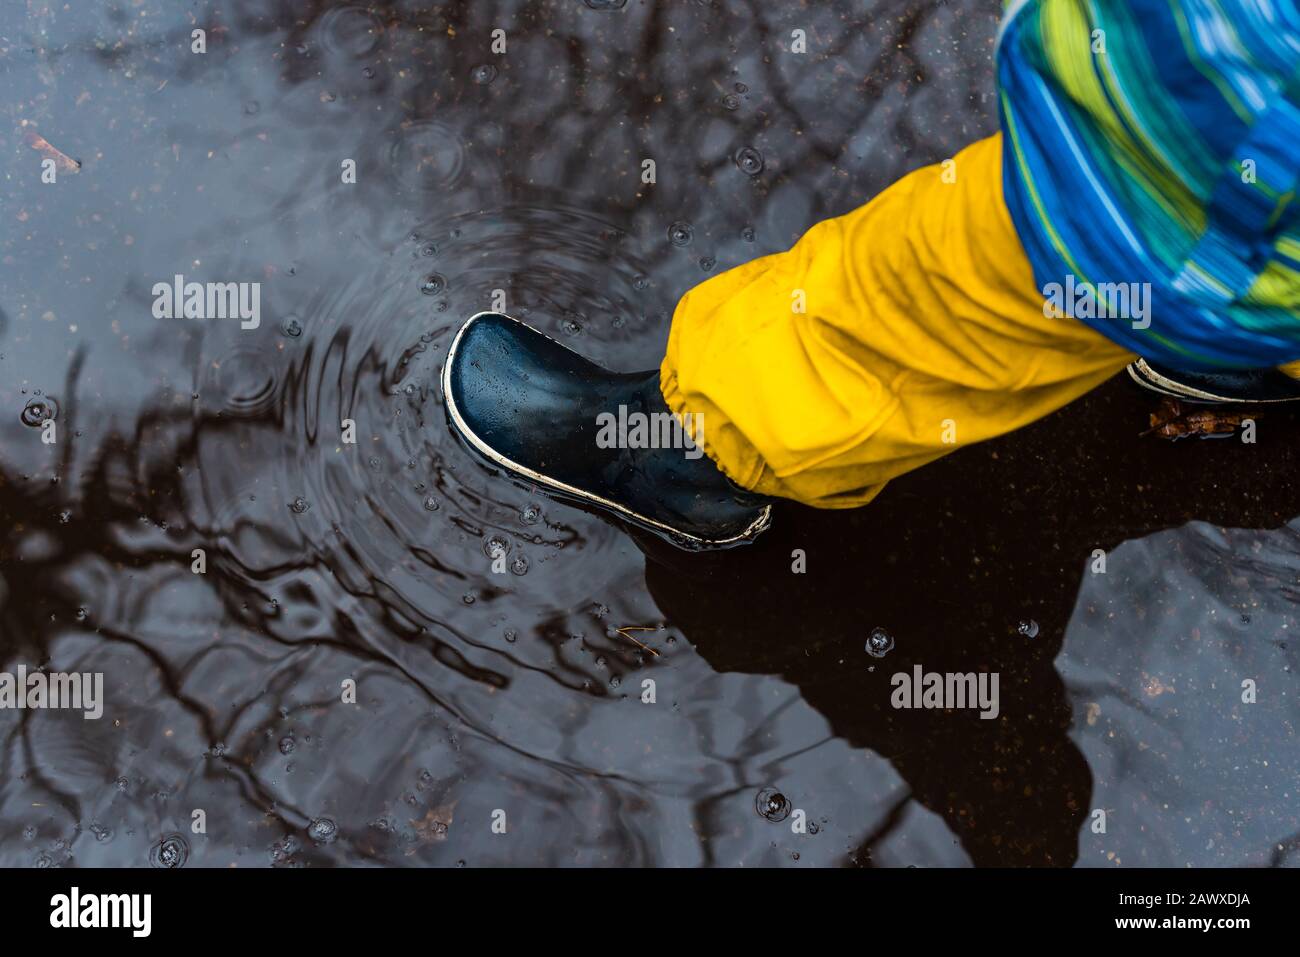 Pied pour enfant avec bottes en caoutchouc dans une flaque, jour pluvieux, hiver, automne, bottes en caoutchouc, eau Banque D'Images